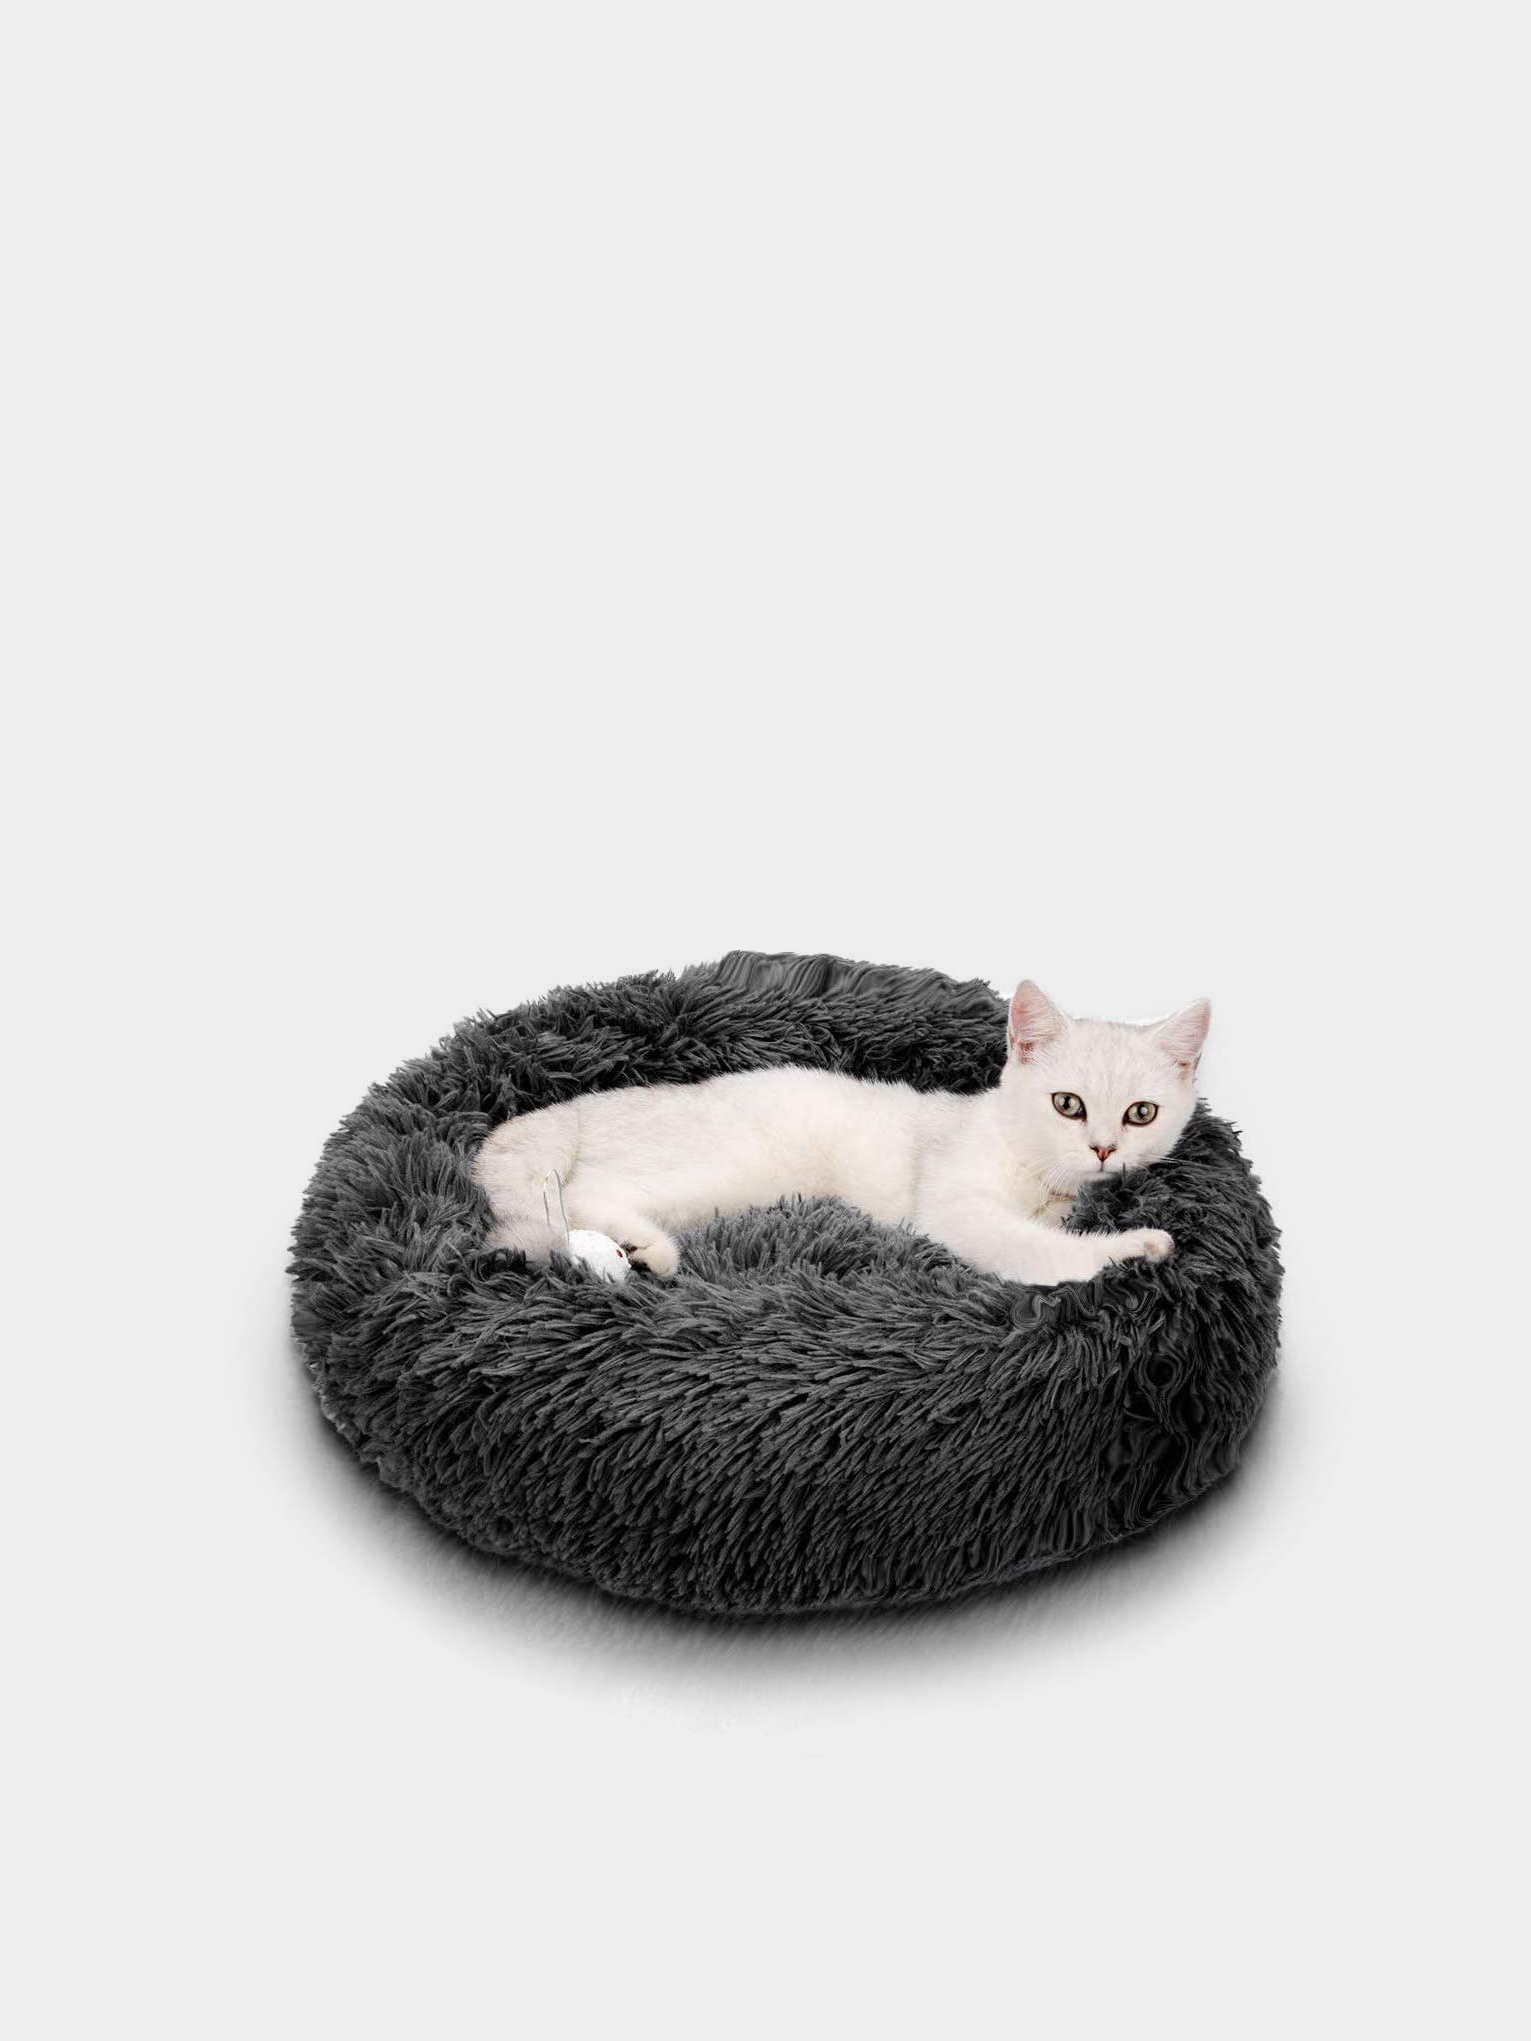 Лежак для собаки кошки с бортиками, размеры 60*50*15 см, текстиль, цвет коричневый